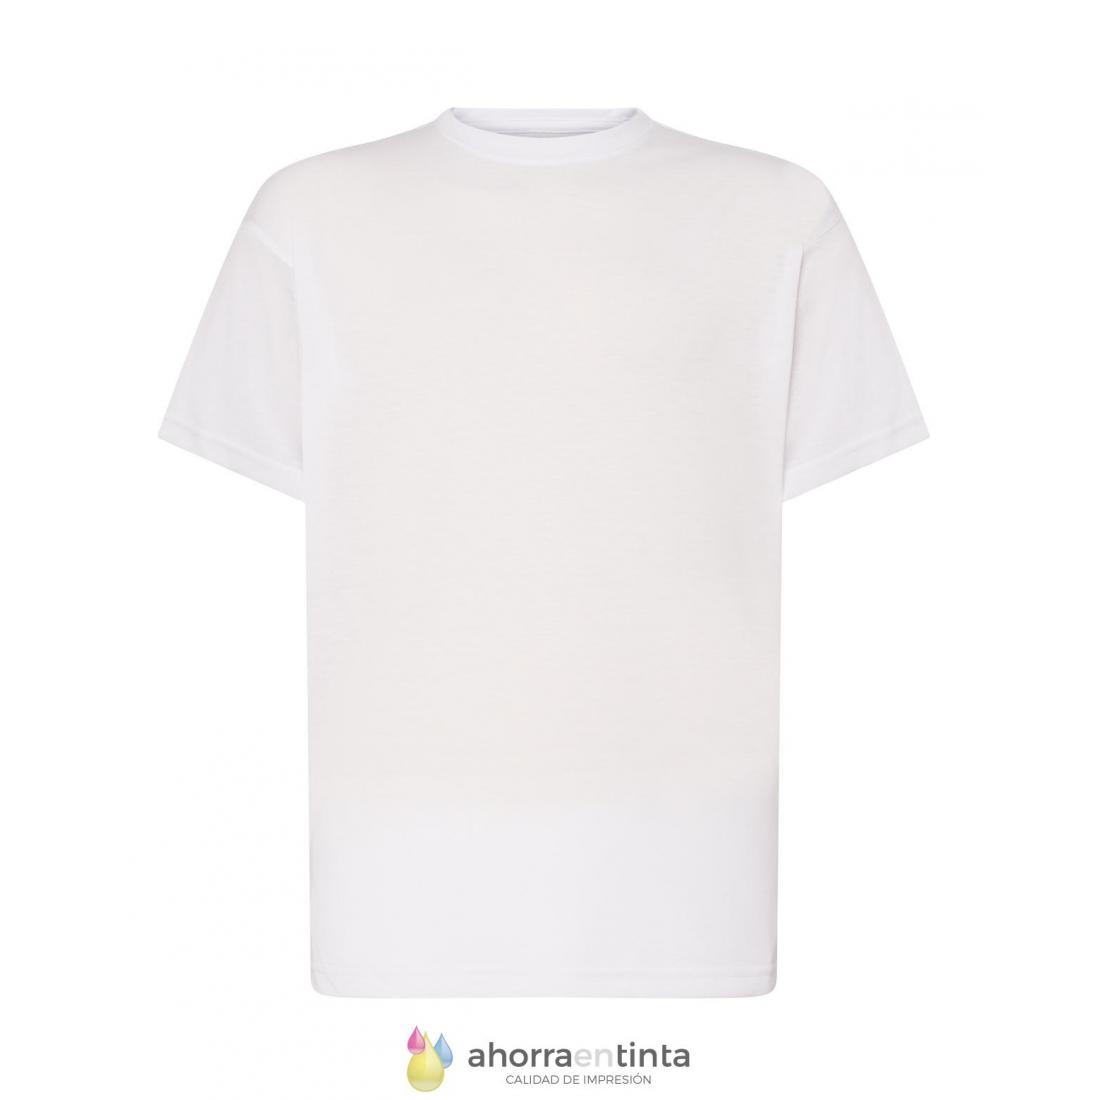 Contra la voluntad nariz Hablar en voz alta Camiseta poliéster JHK blanca -TACTO ALGODÓN- Subli T-shirt HOMBRE